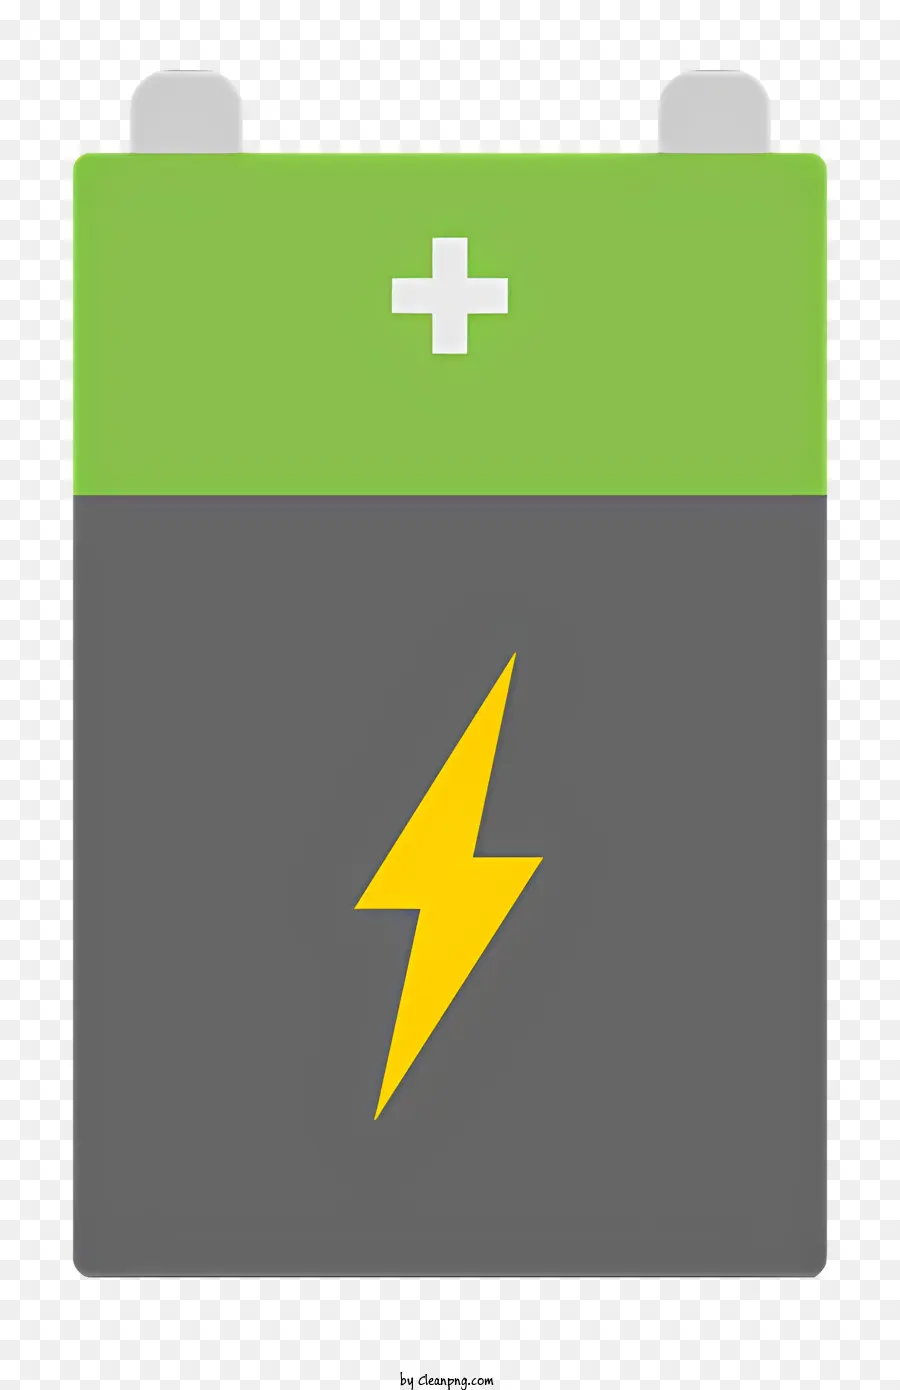 logo pin thiết bị điện thiết bị điện phản ứng điện hóa - Pin xanh với tia sét lưu trữ năng lượng điện